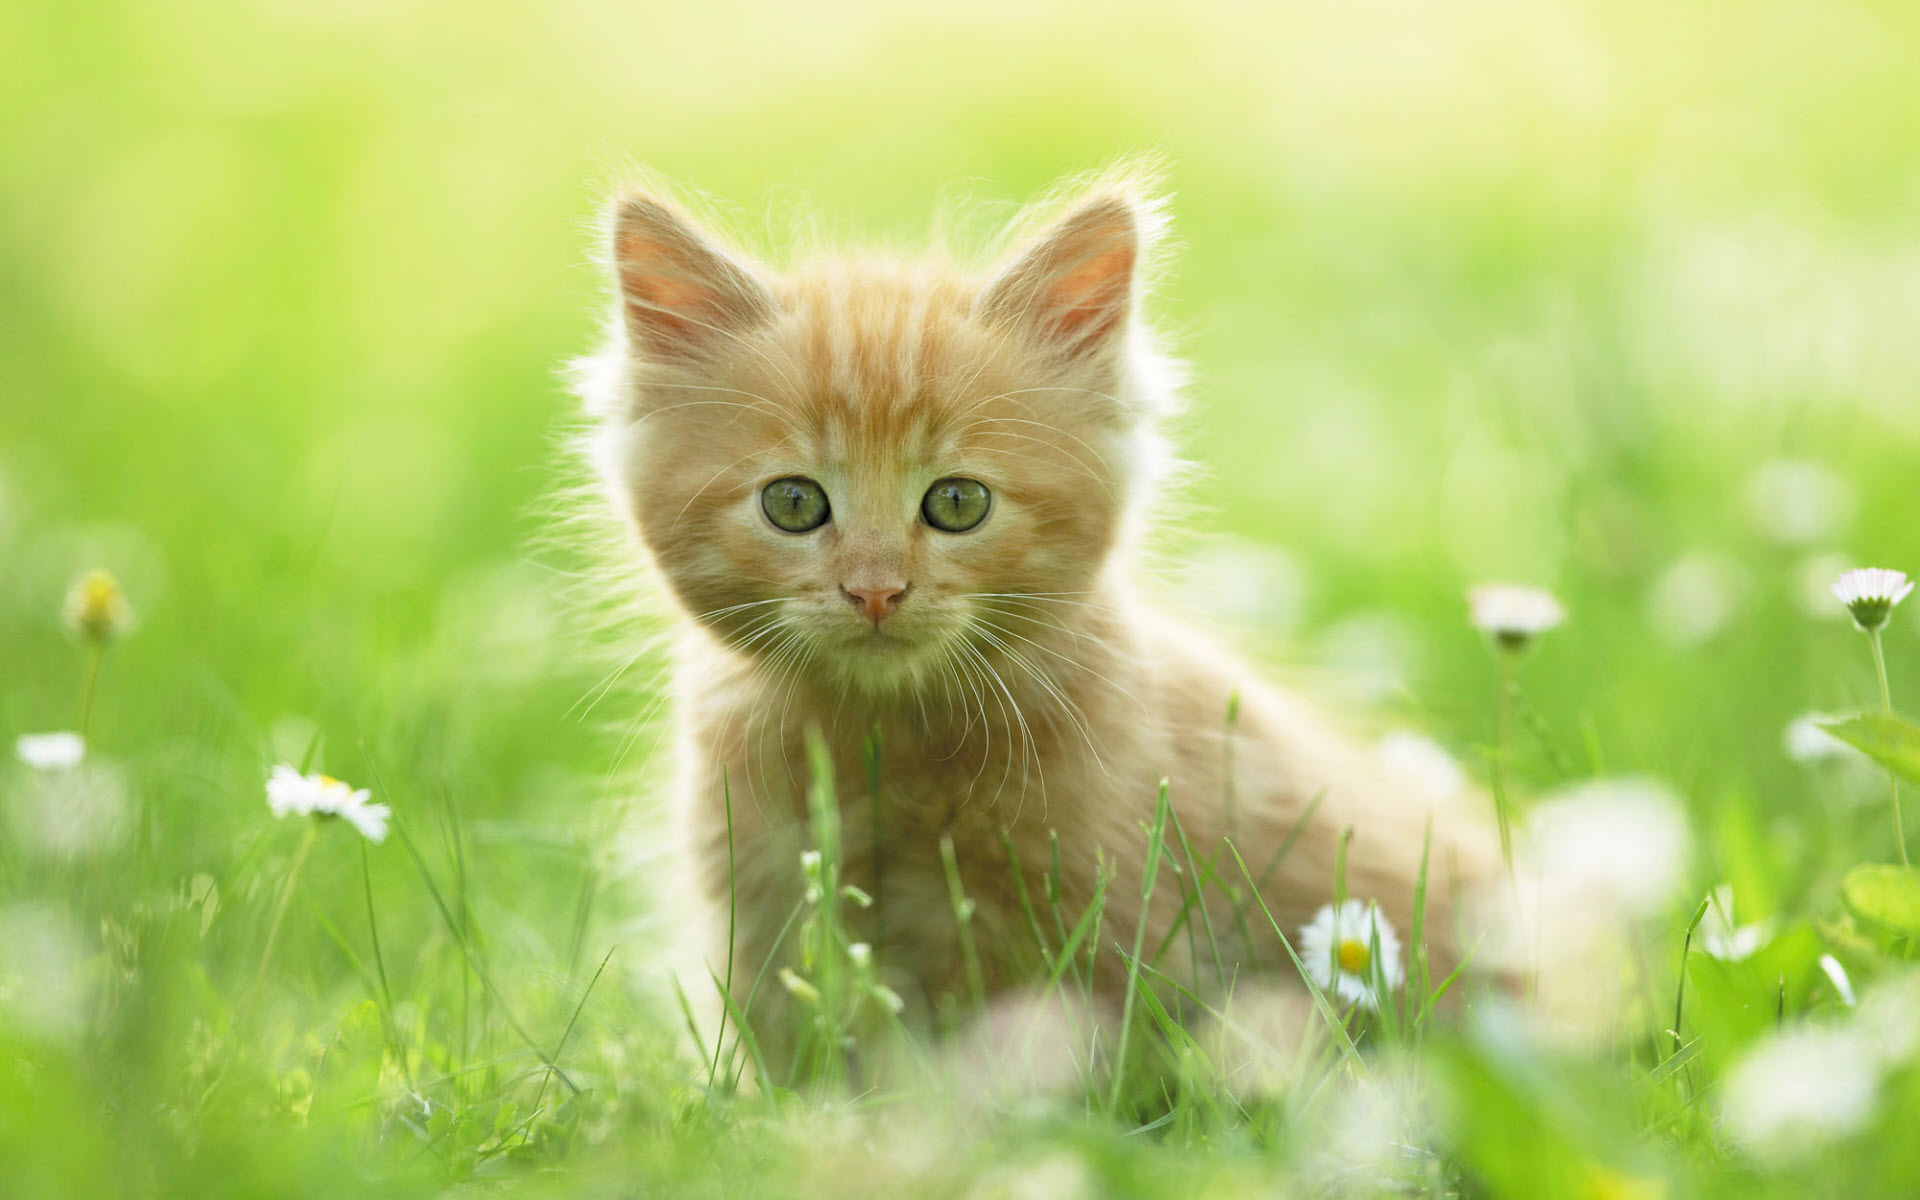 "Cute Kitten" by kitty.green66.
